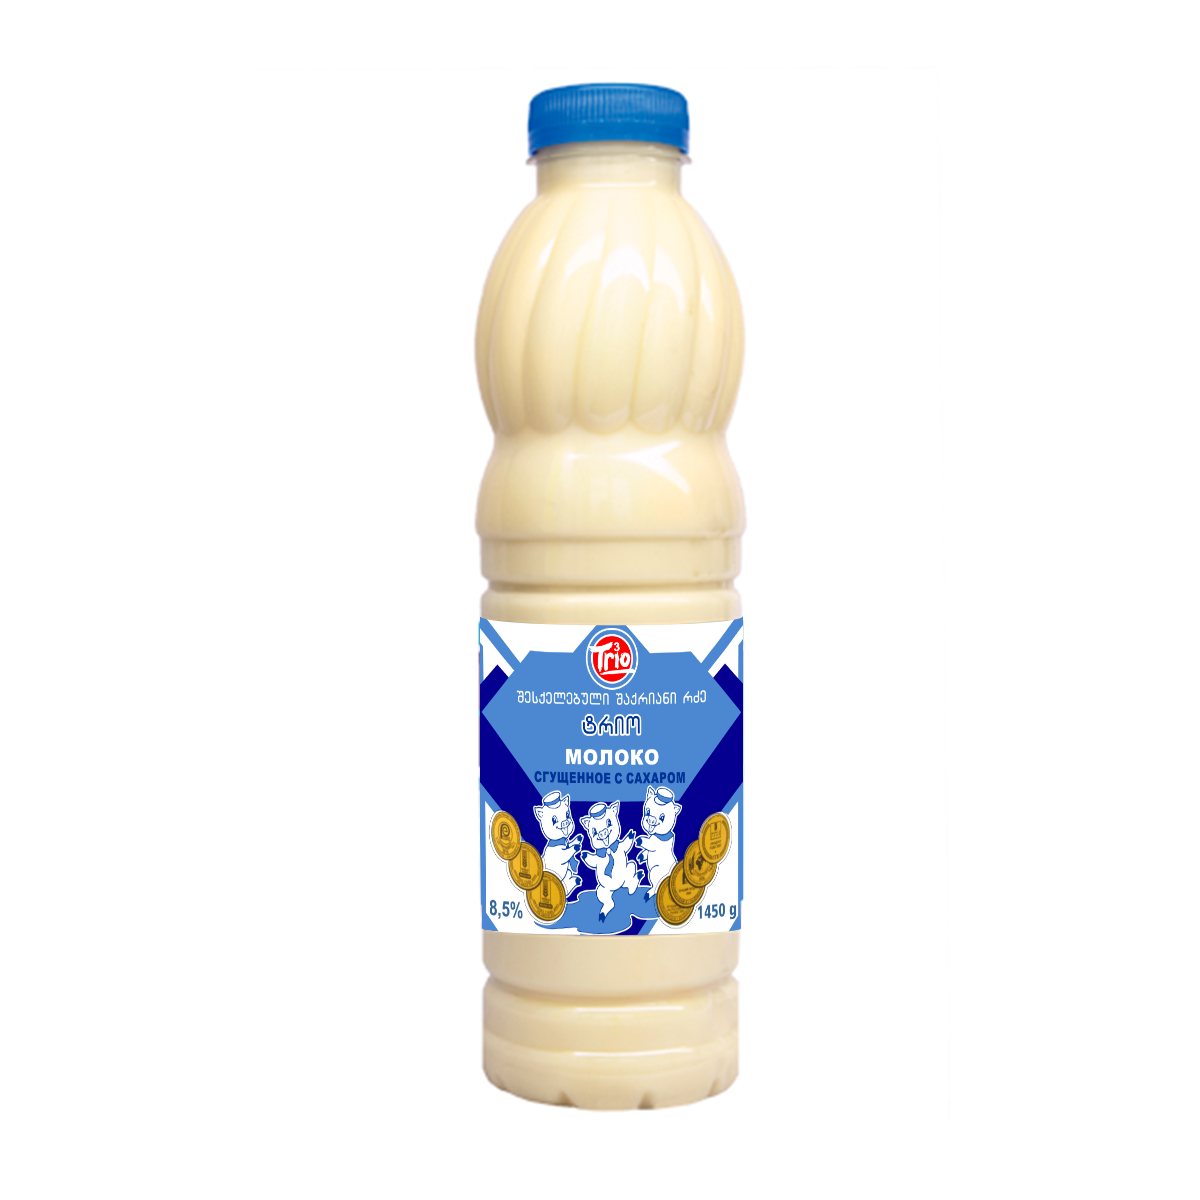 შესქელებული რძე "ტრიო" 1450 გრ